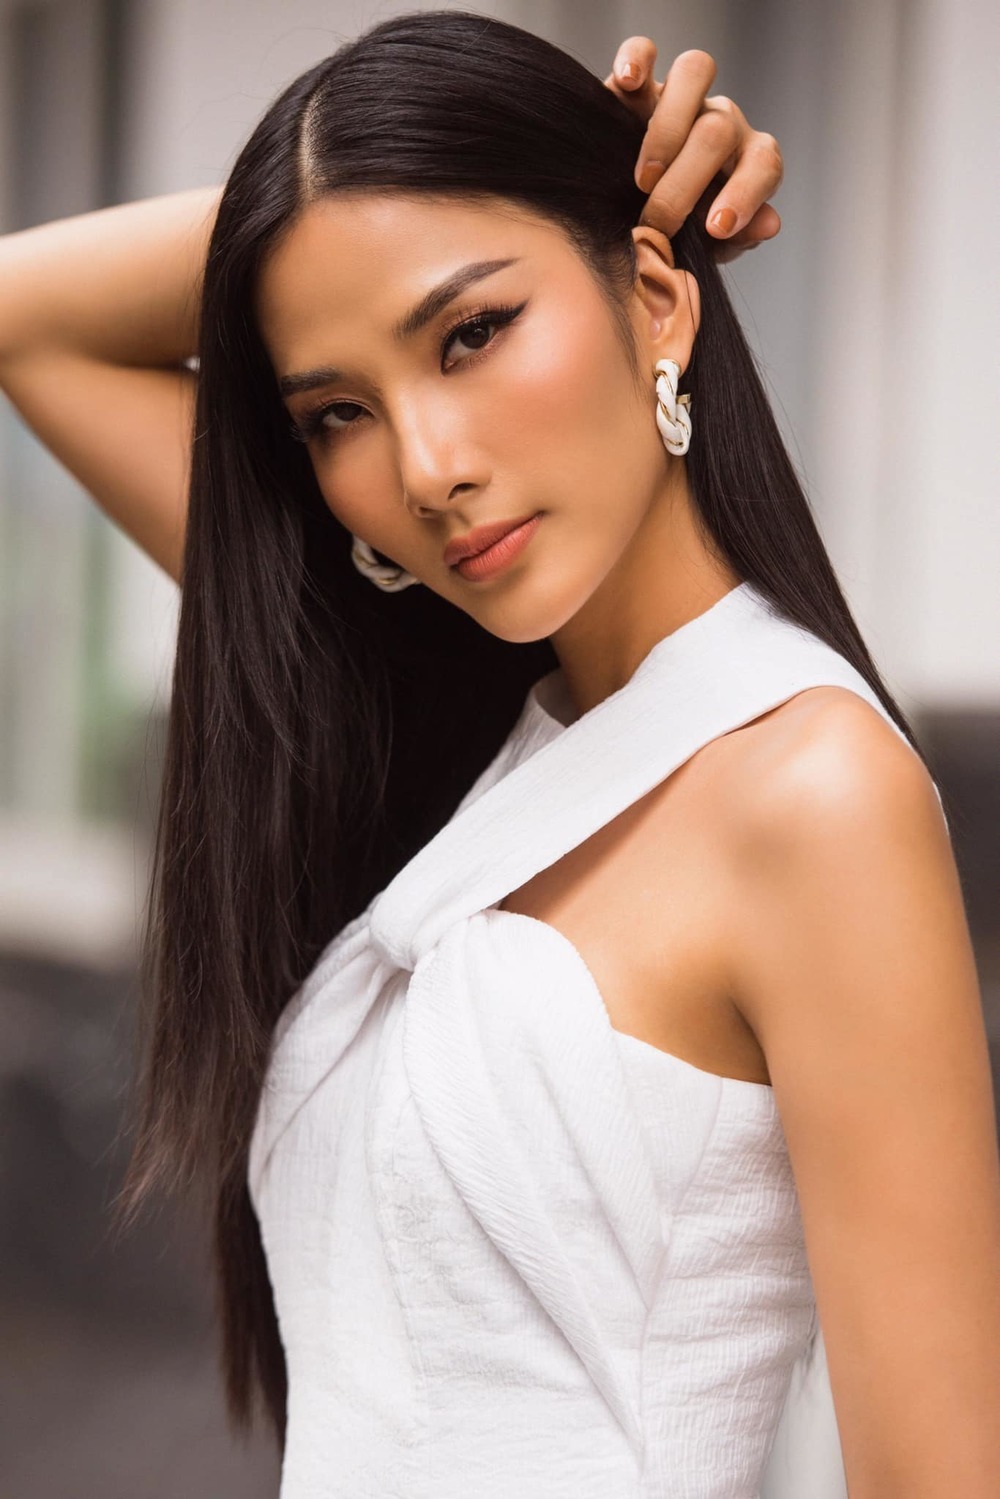 Hoàng Thuỳ là một người mẫu nổi tiếng và là Á hậu cuộc thi Hoa hậu hoàn vũ Việt Nam 2017.